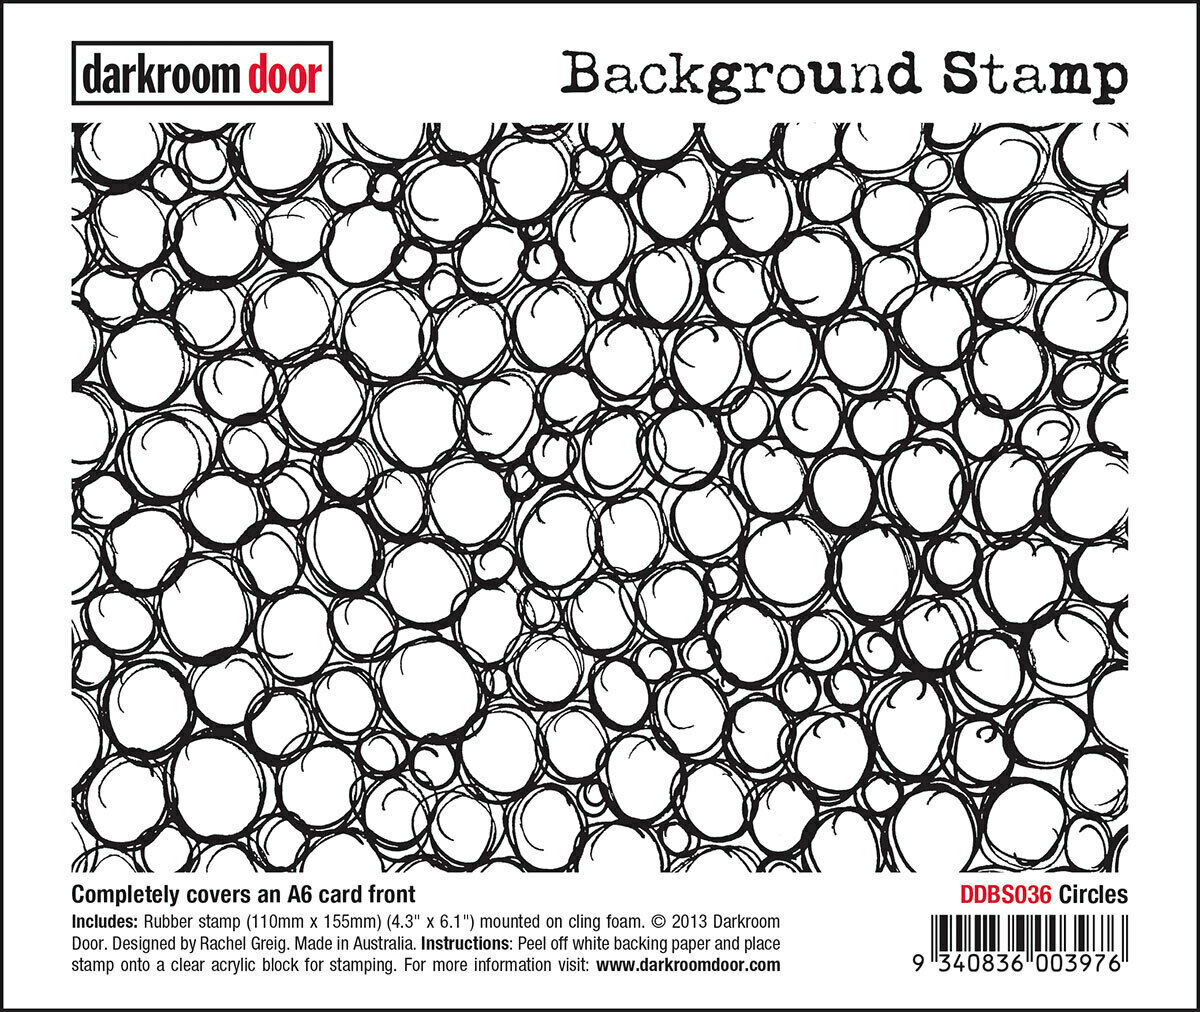 Darkroom Door Background Rubber Stamp Circles 110mm x 155mm